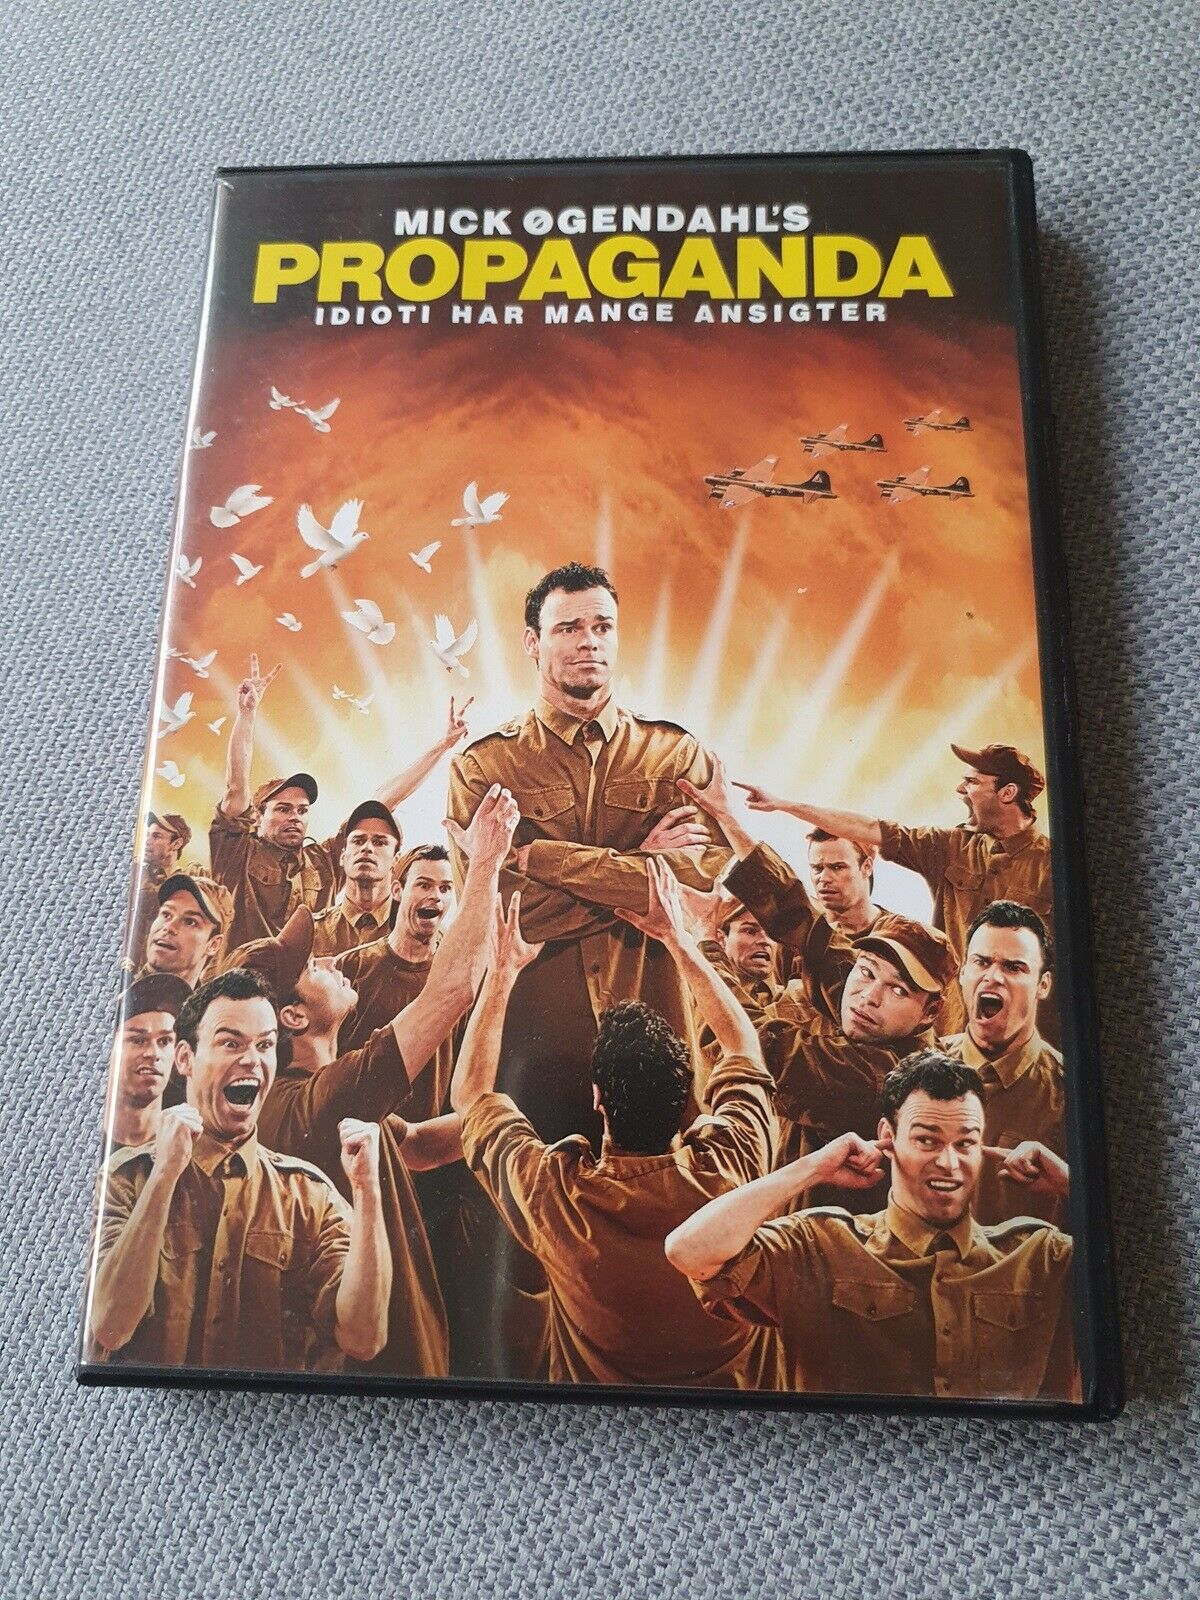 basen jøde køleskab Propaganda, instruktør Mick Øgendahl, DVD – dba.dk – Køb og Salg af Nyt og  Brugt